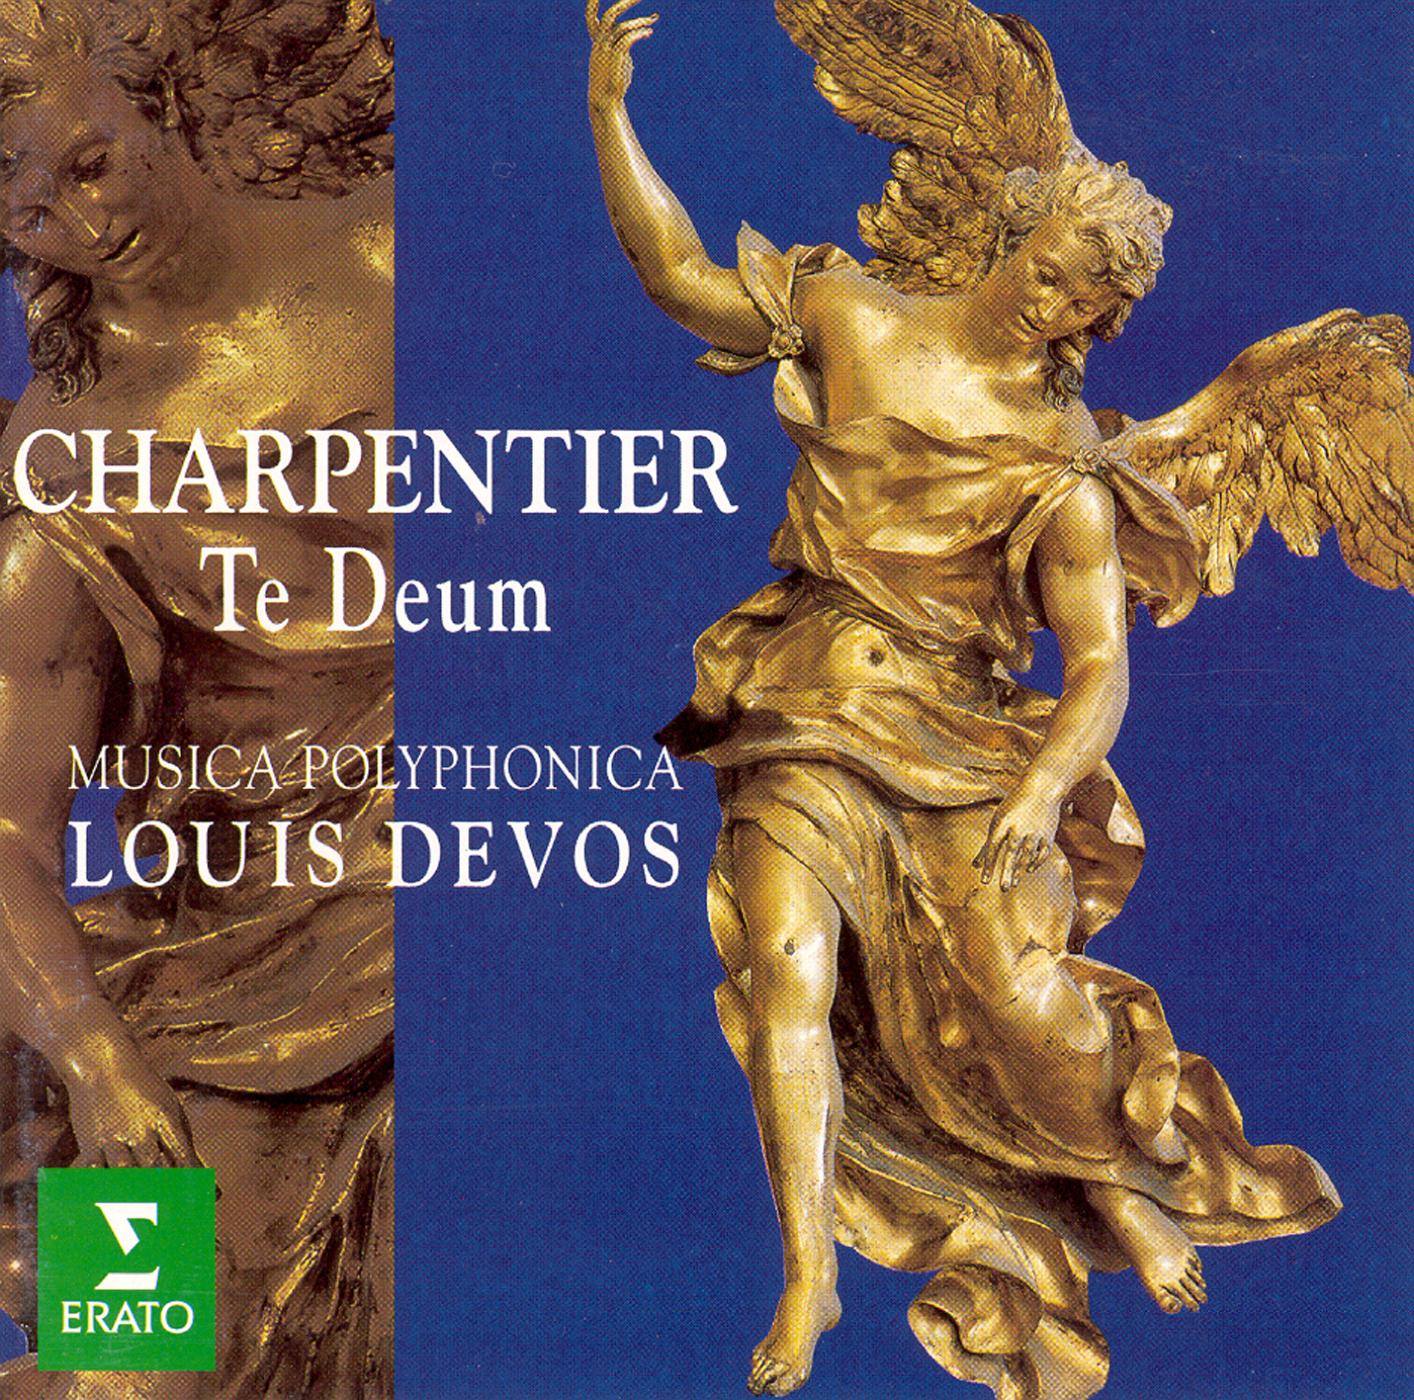 Charpentier:Canticum in honorem Sancti Ludovici regis galliae H365 : XI Psallite regi nostro